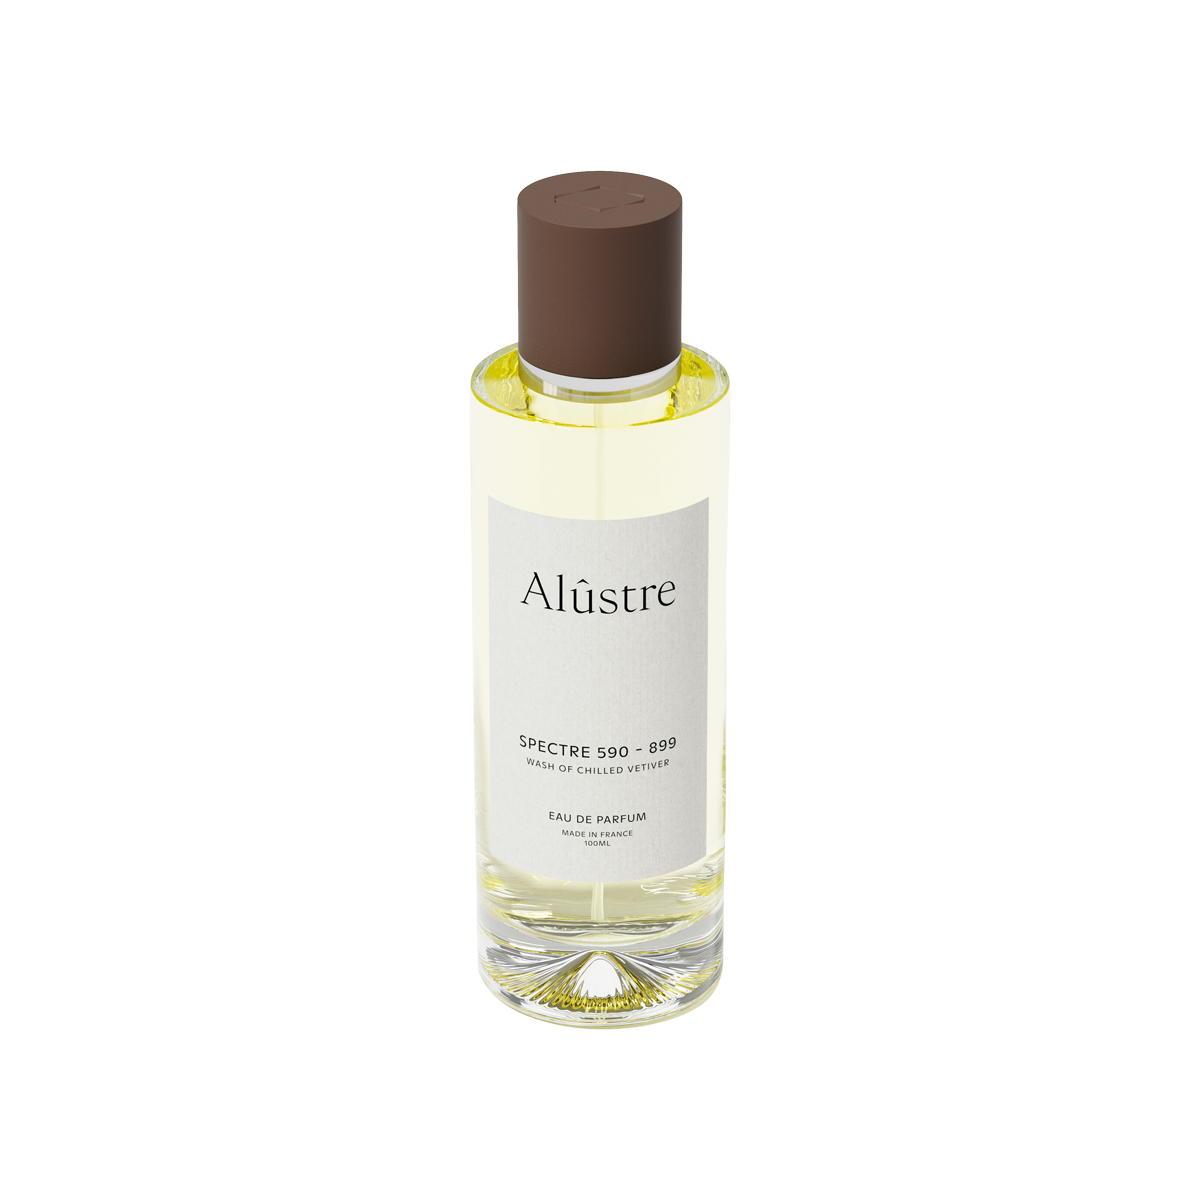 Alûstre - Spectre 590 - 899 Eau de Parfum